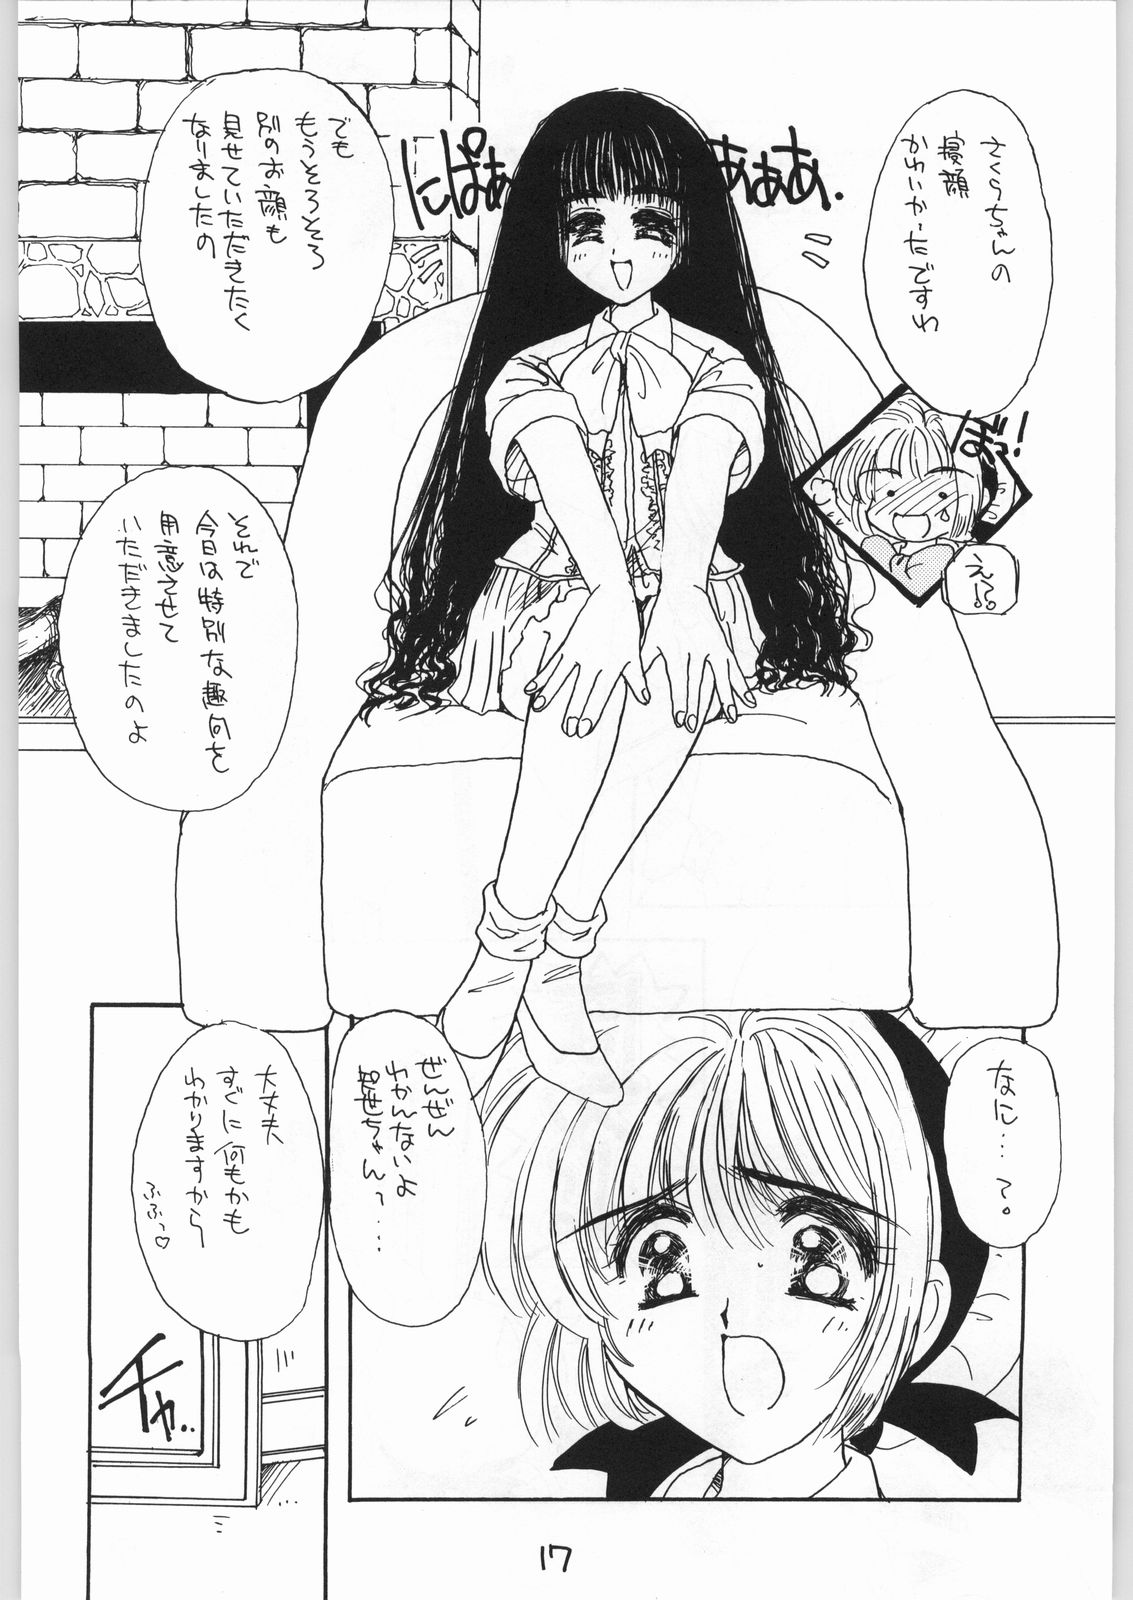 [カフェテリアWATERMELON (小菅勇太郎)] GIRL IN THE BOX 3 (カードキャプターさくら)